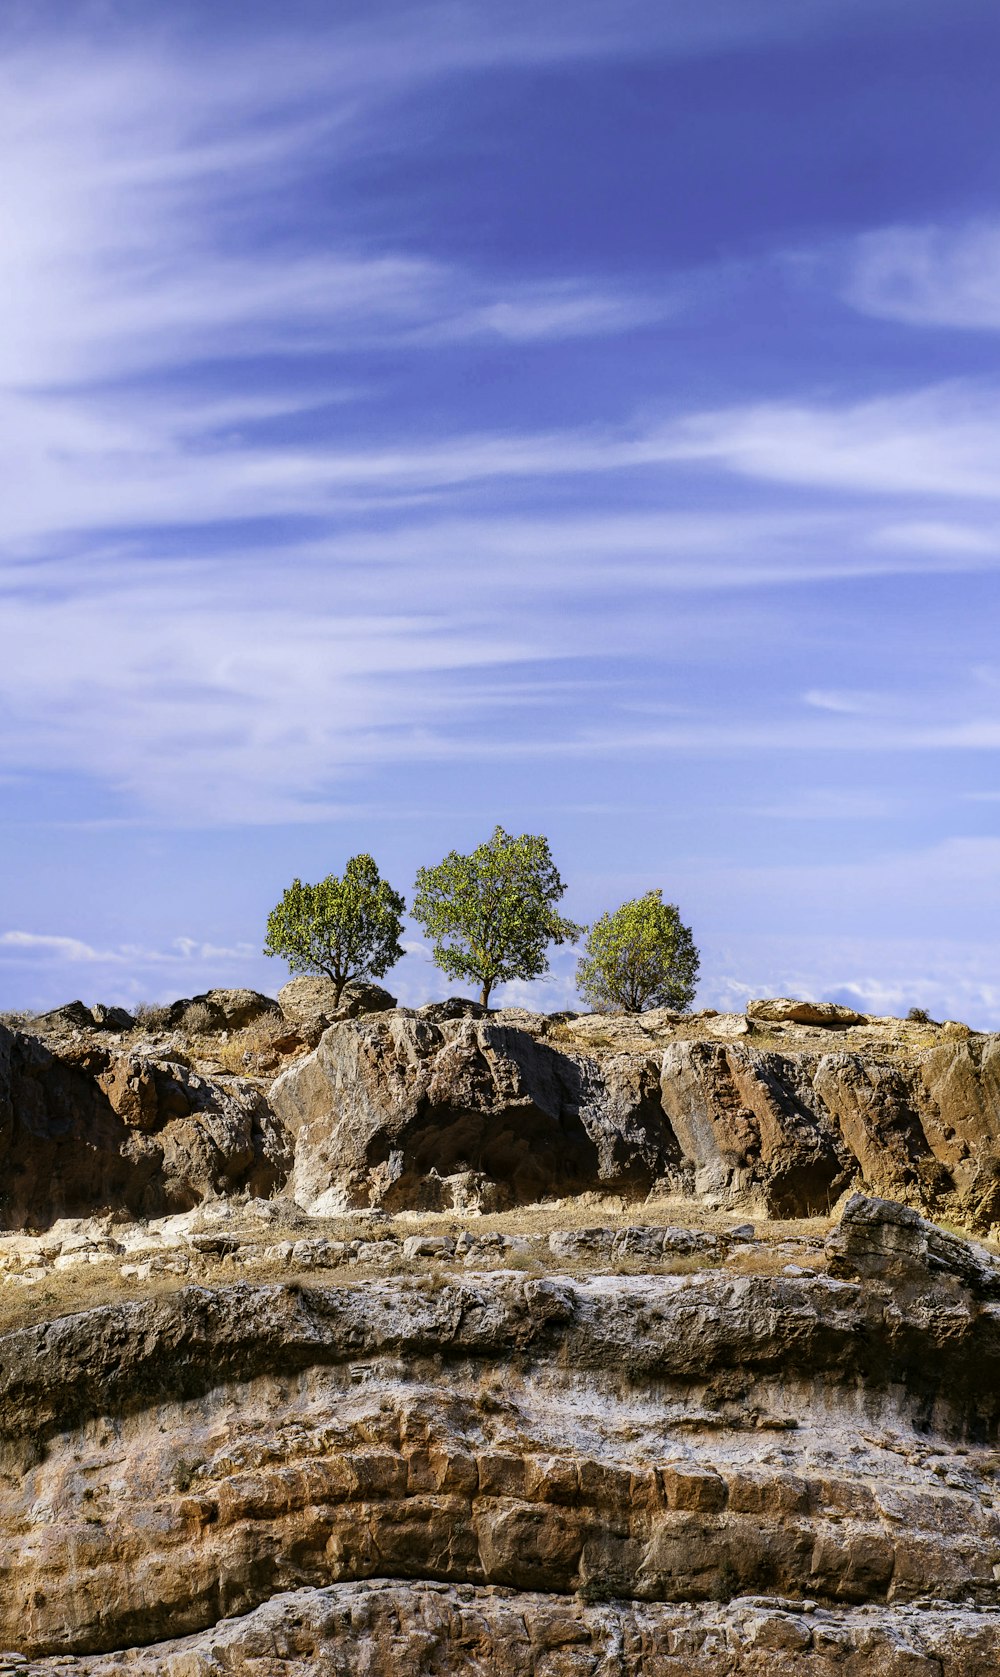 Un groupe d’arbres sur une falaise rocheuse